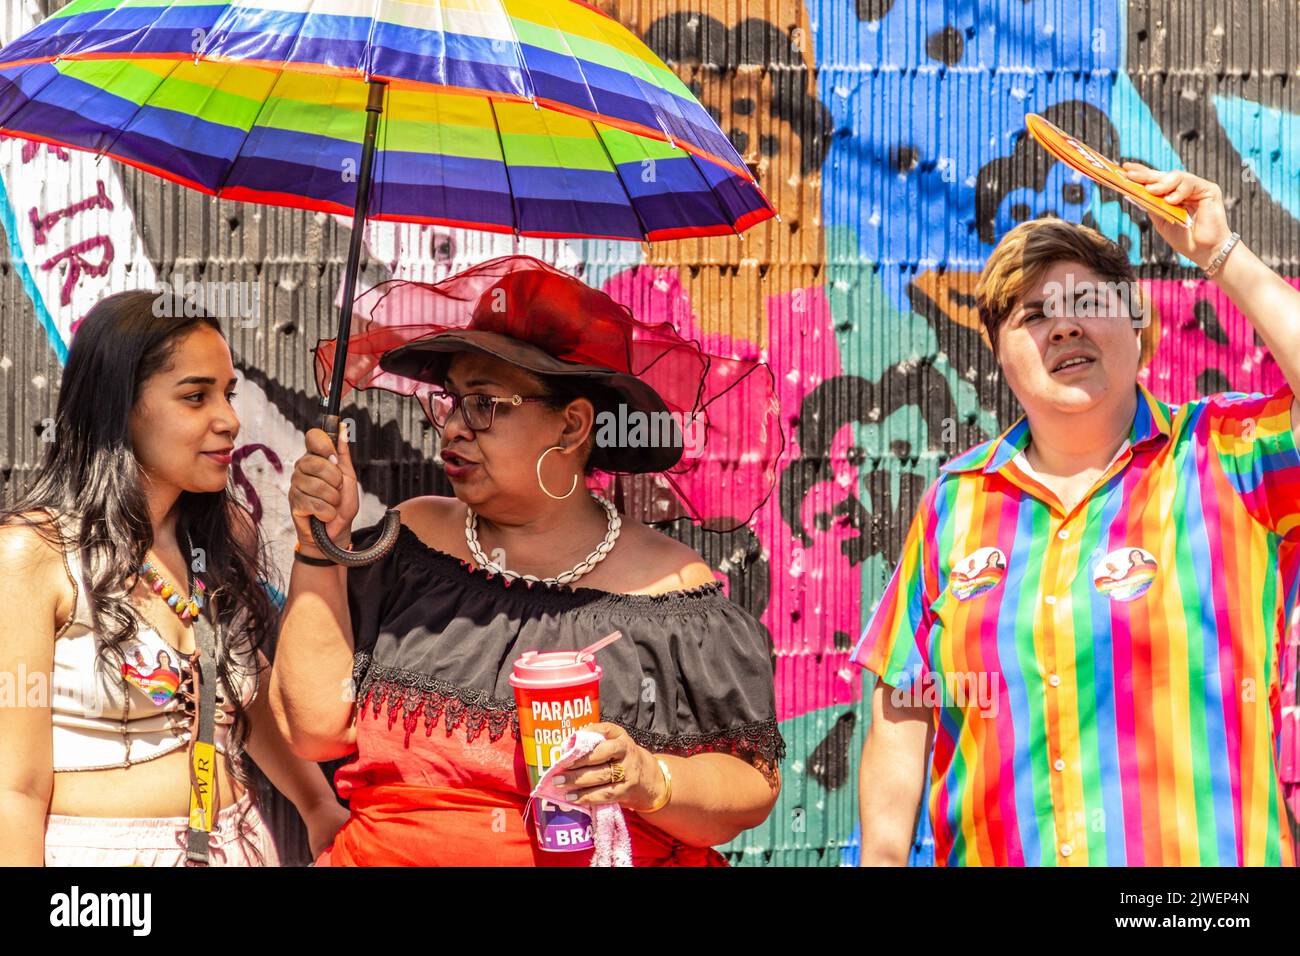 Goias, Brésil – 05 septembre 2022 : deux personnes parlent sous le parapluie et une autre personne à côté d'eux dans des vêtements colorés, regardant vers le haut. Banque D'Images